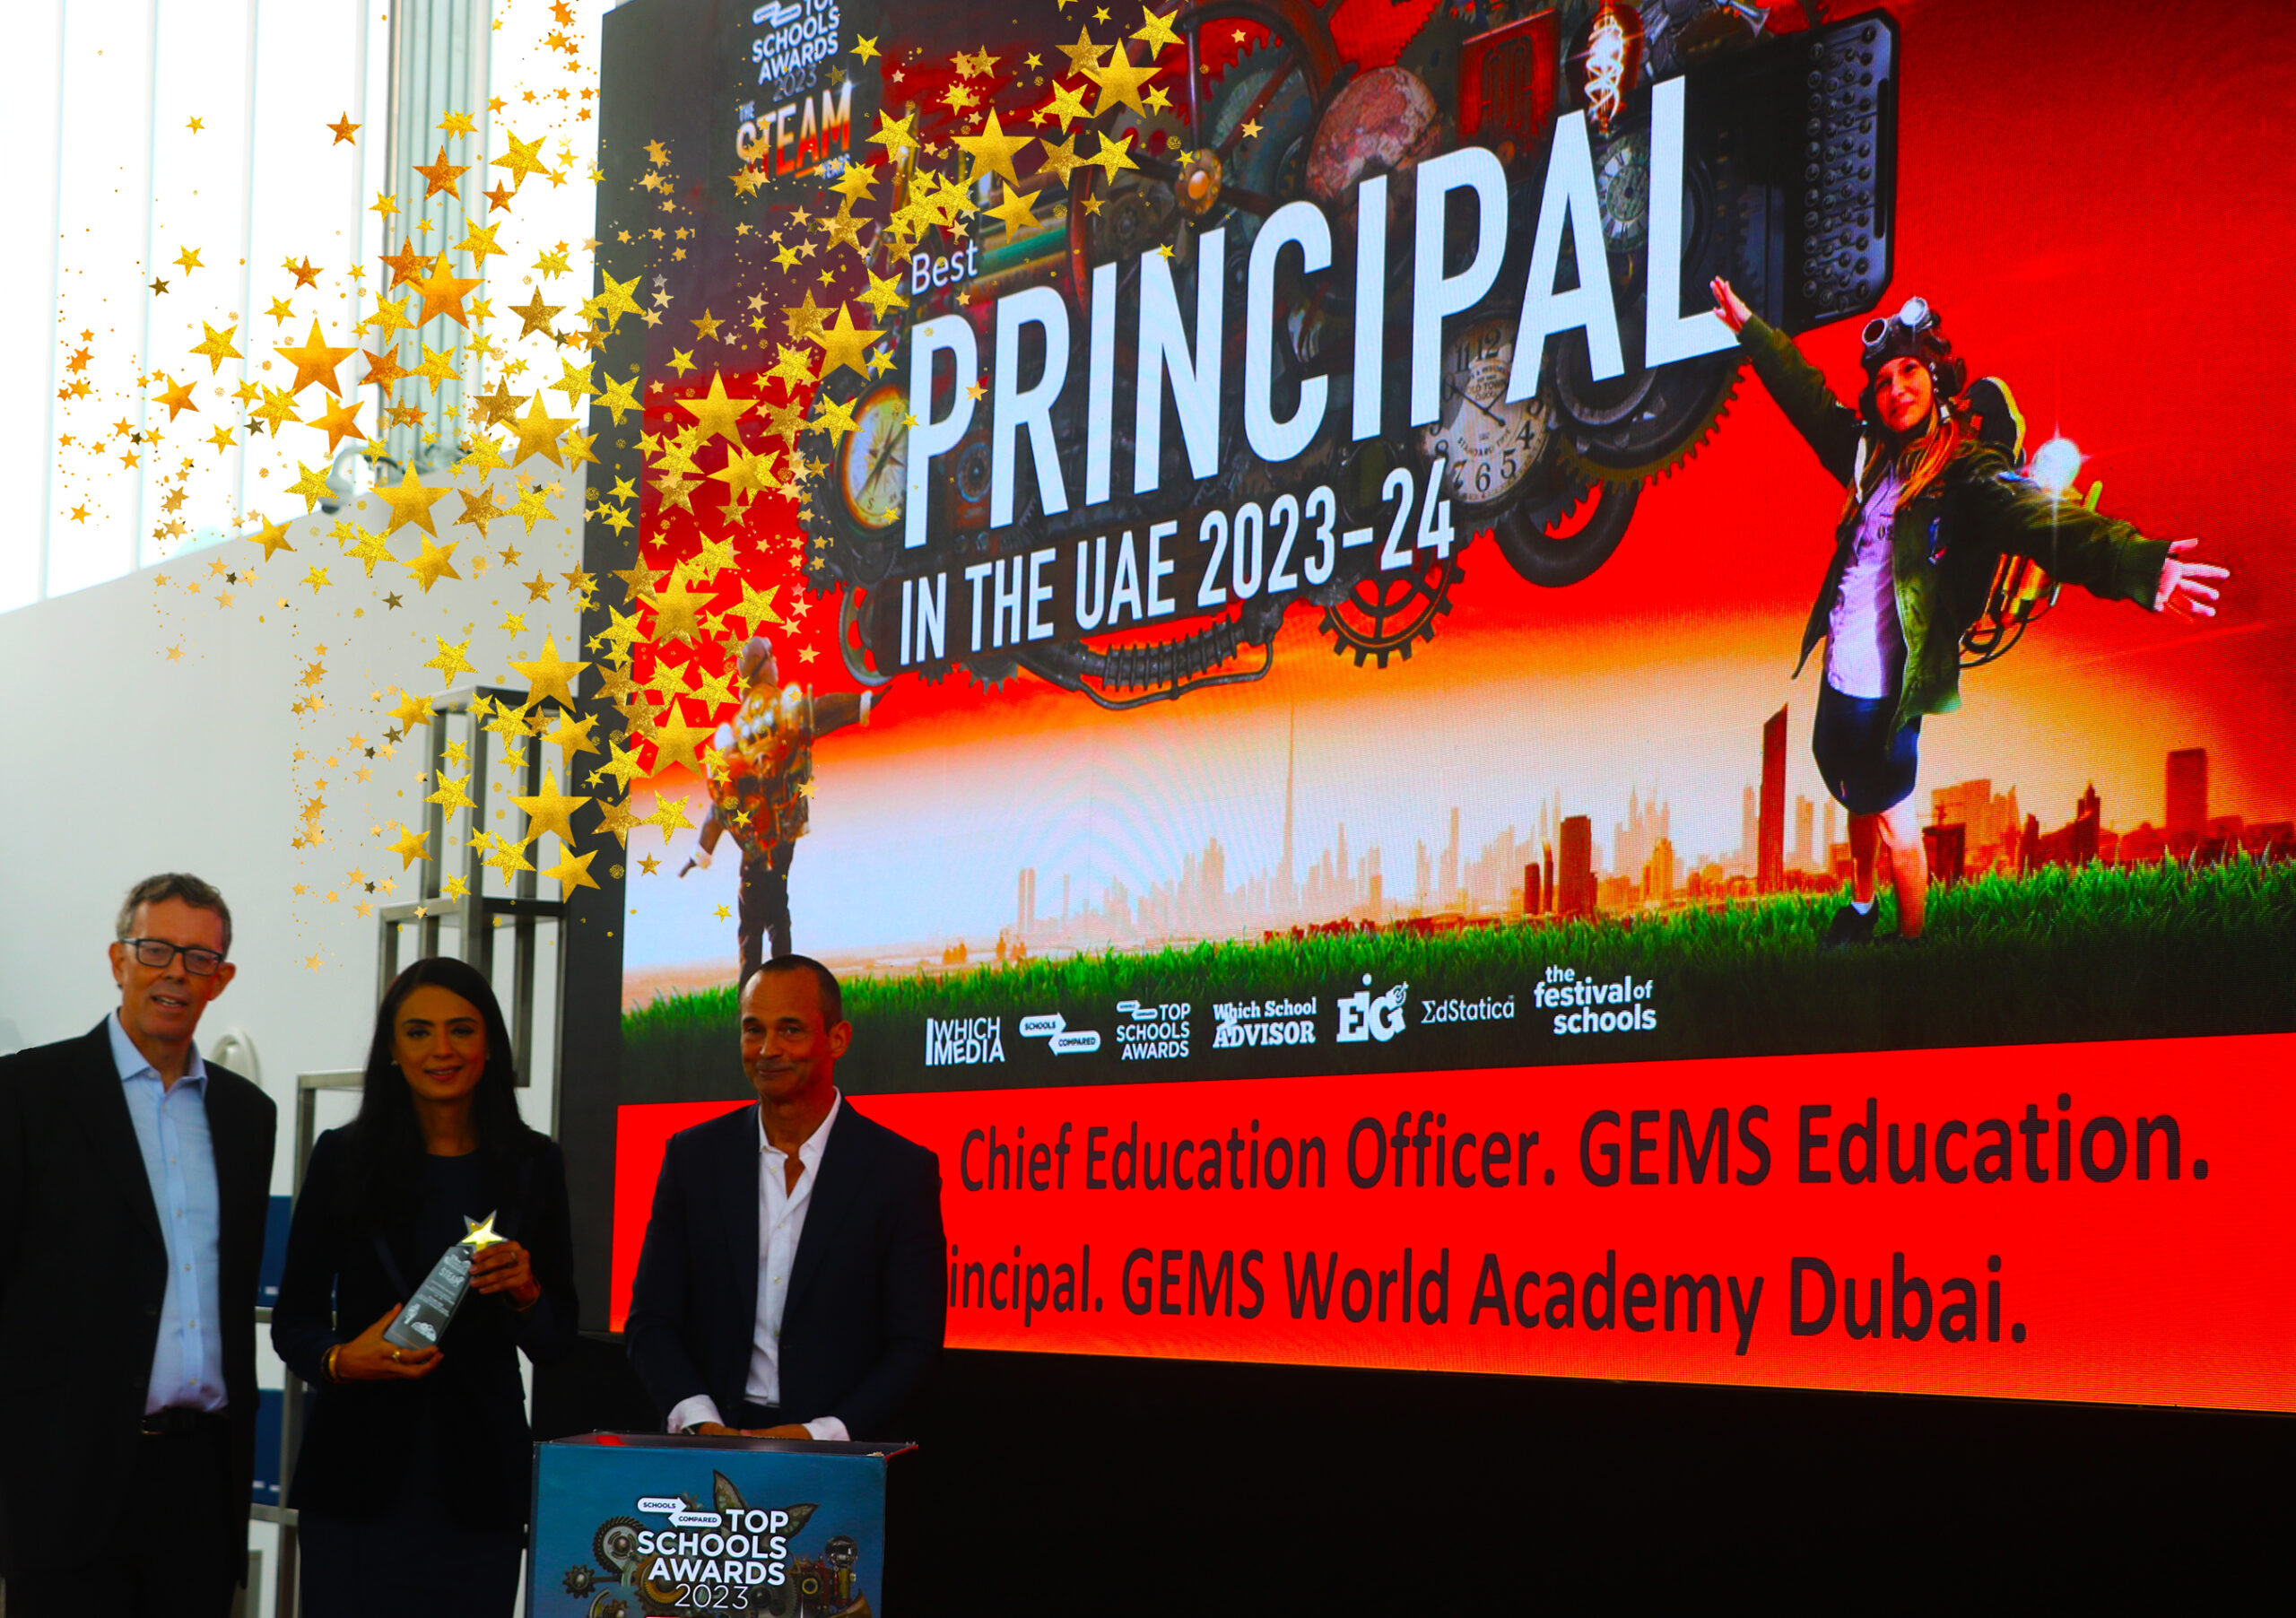 Dr. Saima Rana, Chief Executive Officer der GEMS World Academy Dubai und Chief Education Officer von GEMS Education, erhielt bei den Top Schools Awards 2024 die höchste Auszeichnung als beste Schulleiterin in den Vereinigten Arabischen Emiraten. Der Preis wurde bei den Bildungs-Oscars der VAE verliehen, die im November 2023 im Pavillon des Emirates Gold Club stattfanden.